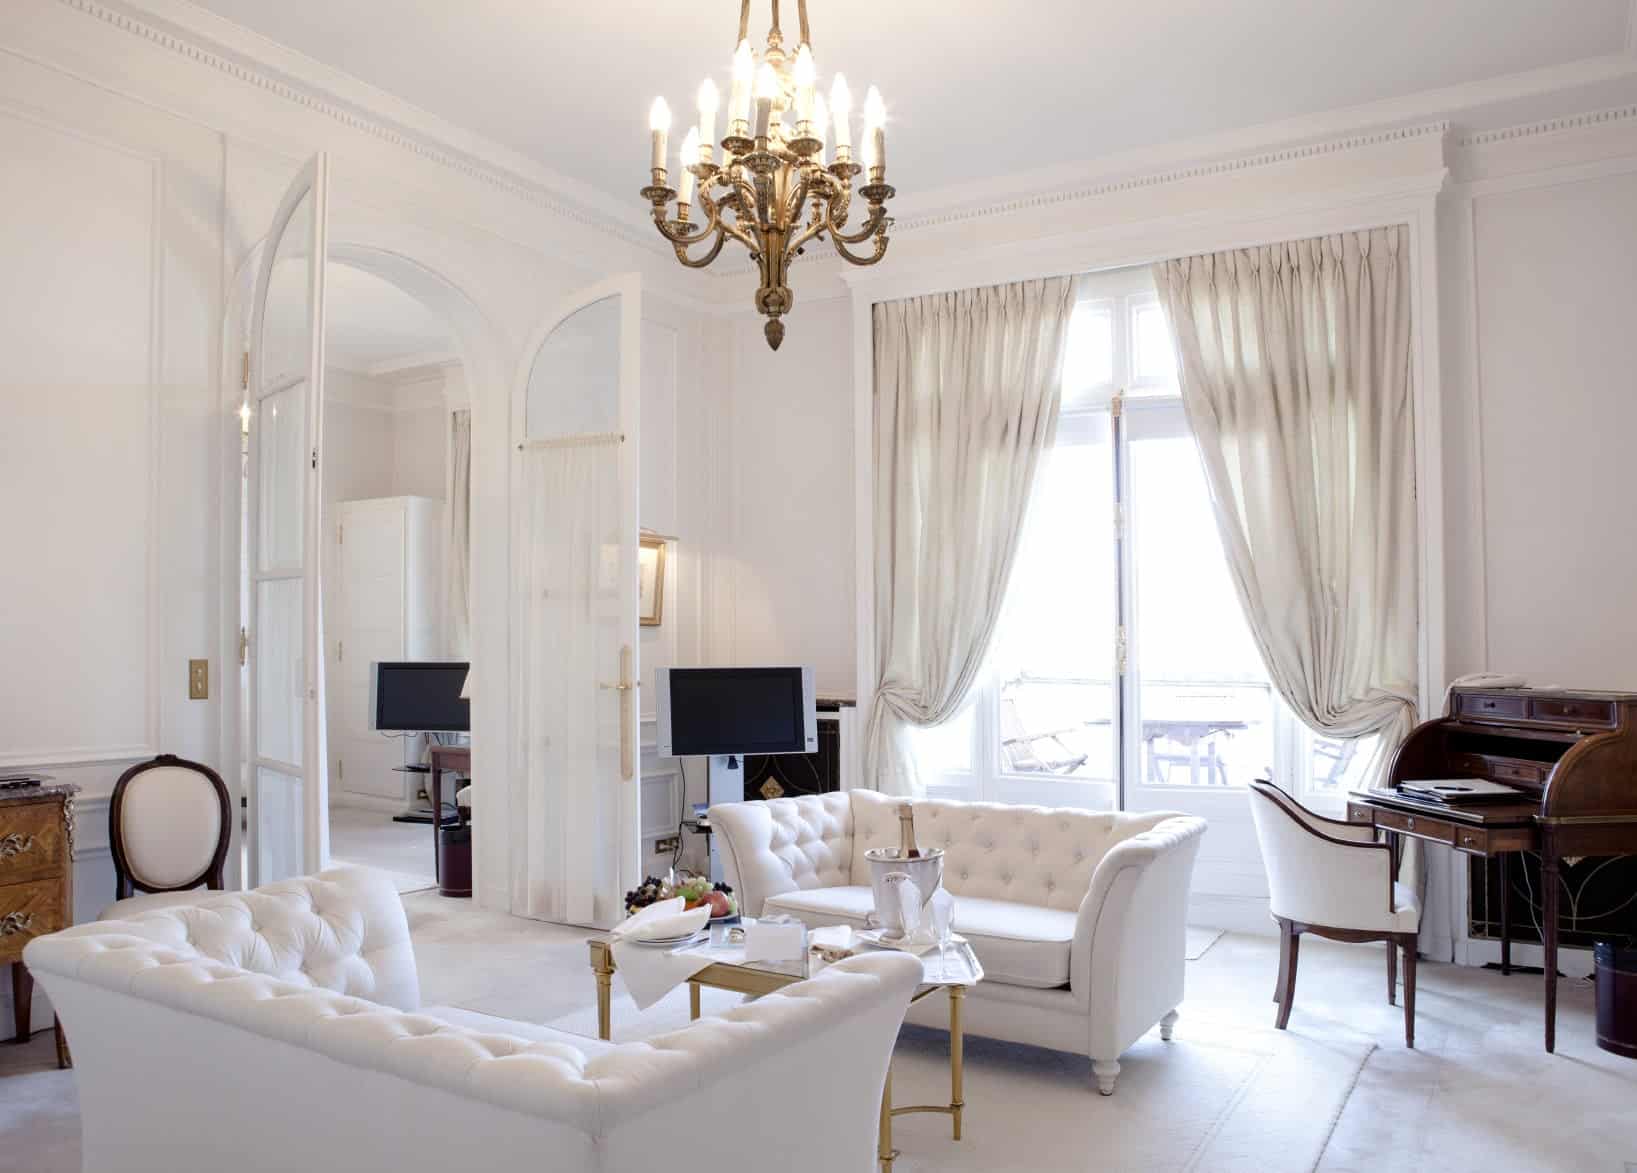 这间客厅的特色是白色的高档沙发和一张漂亮的中央桌子。房间里有一盏华丽的枝形吊灯。